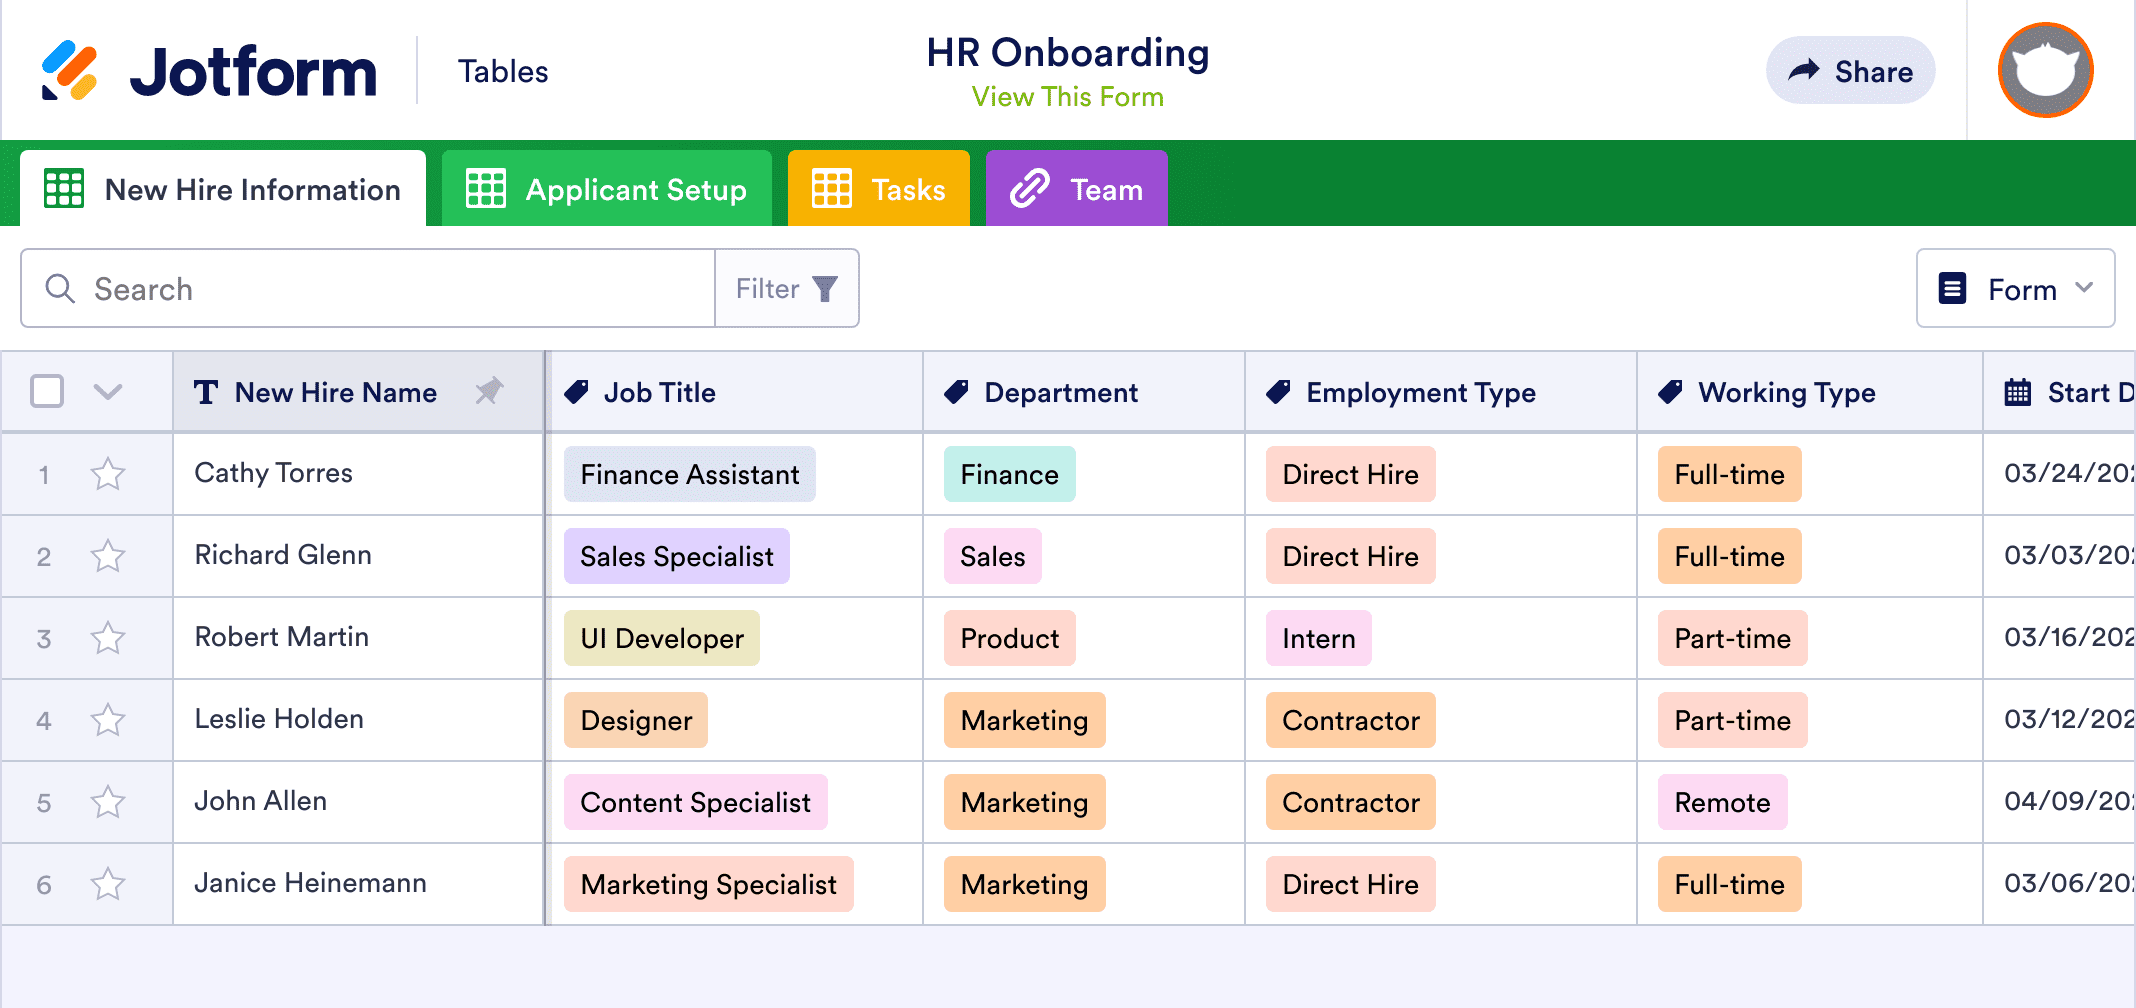 HR Onboarding